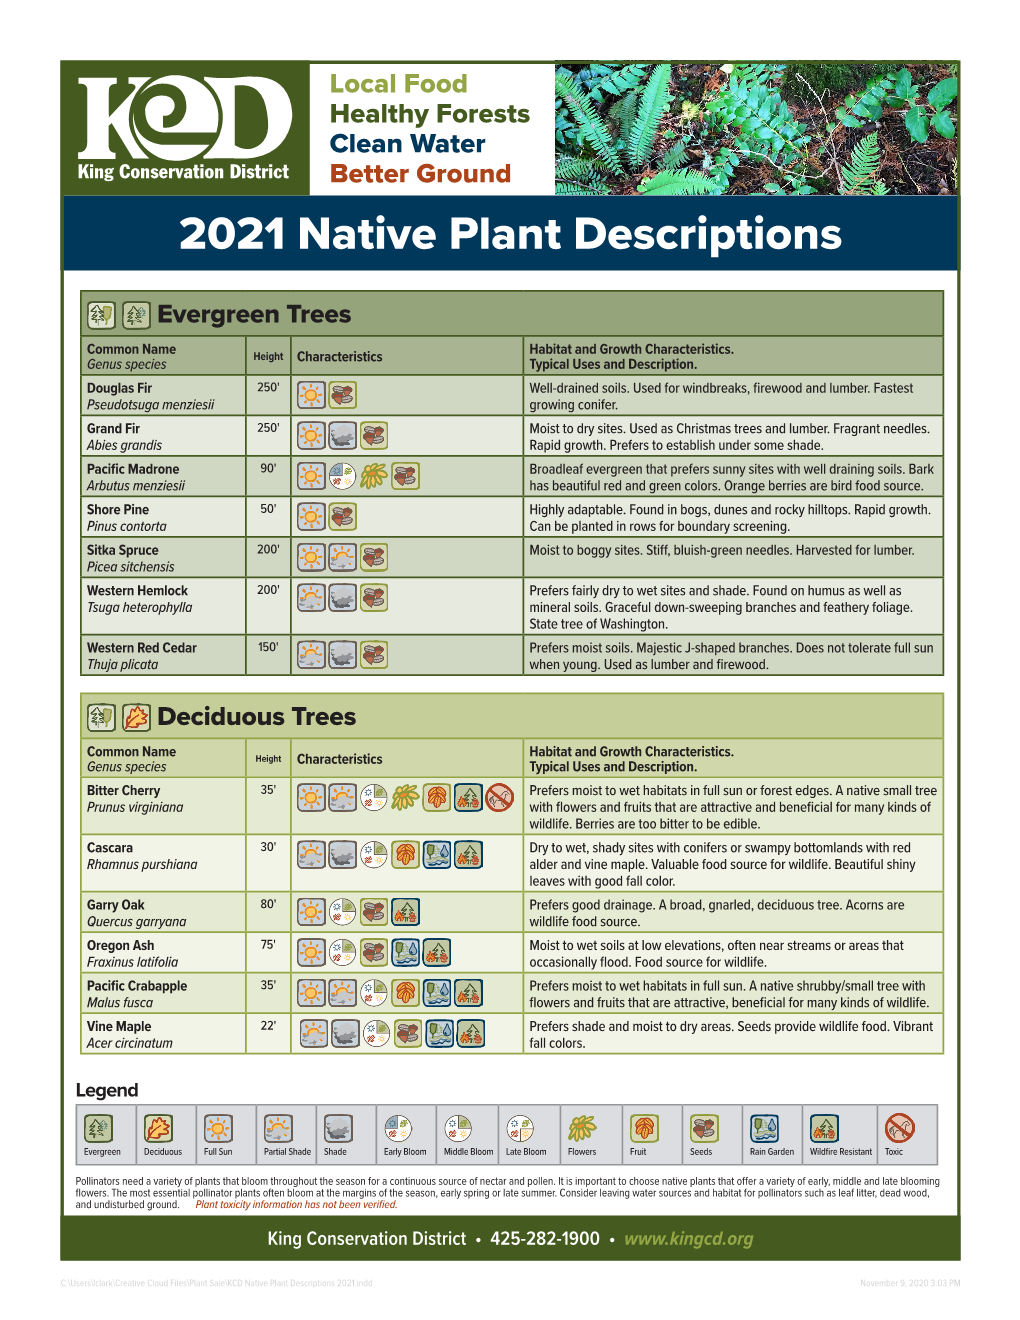 KCD Native Plant Descriptions